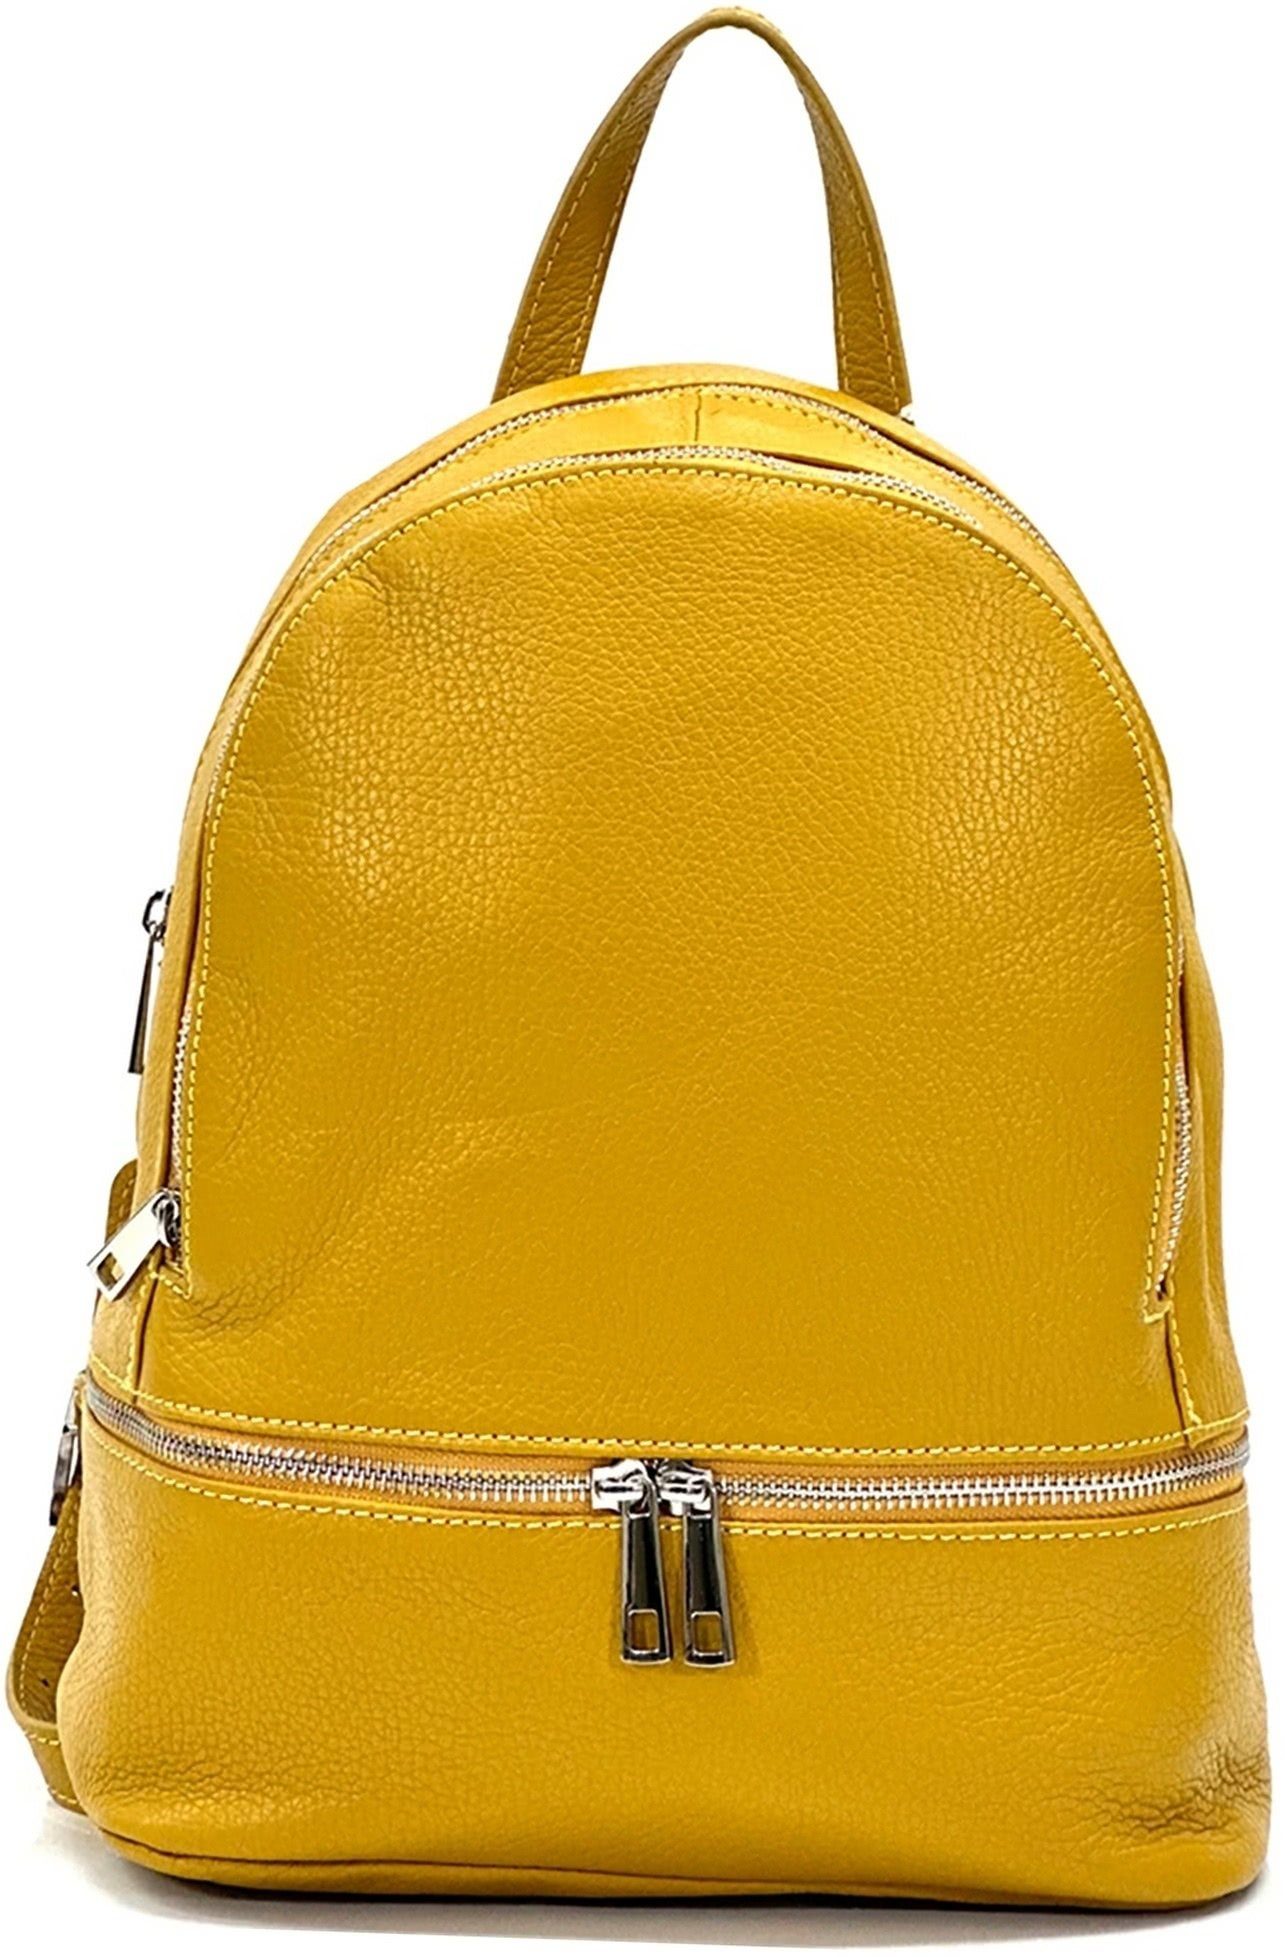 FLORENCE Cityrucksack Rucksack gelb, Italy Damen Tasche Made-In Echtleder Cityrucksack), Damen Florence (Cityrucksack, Echtleder